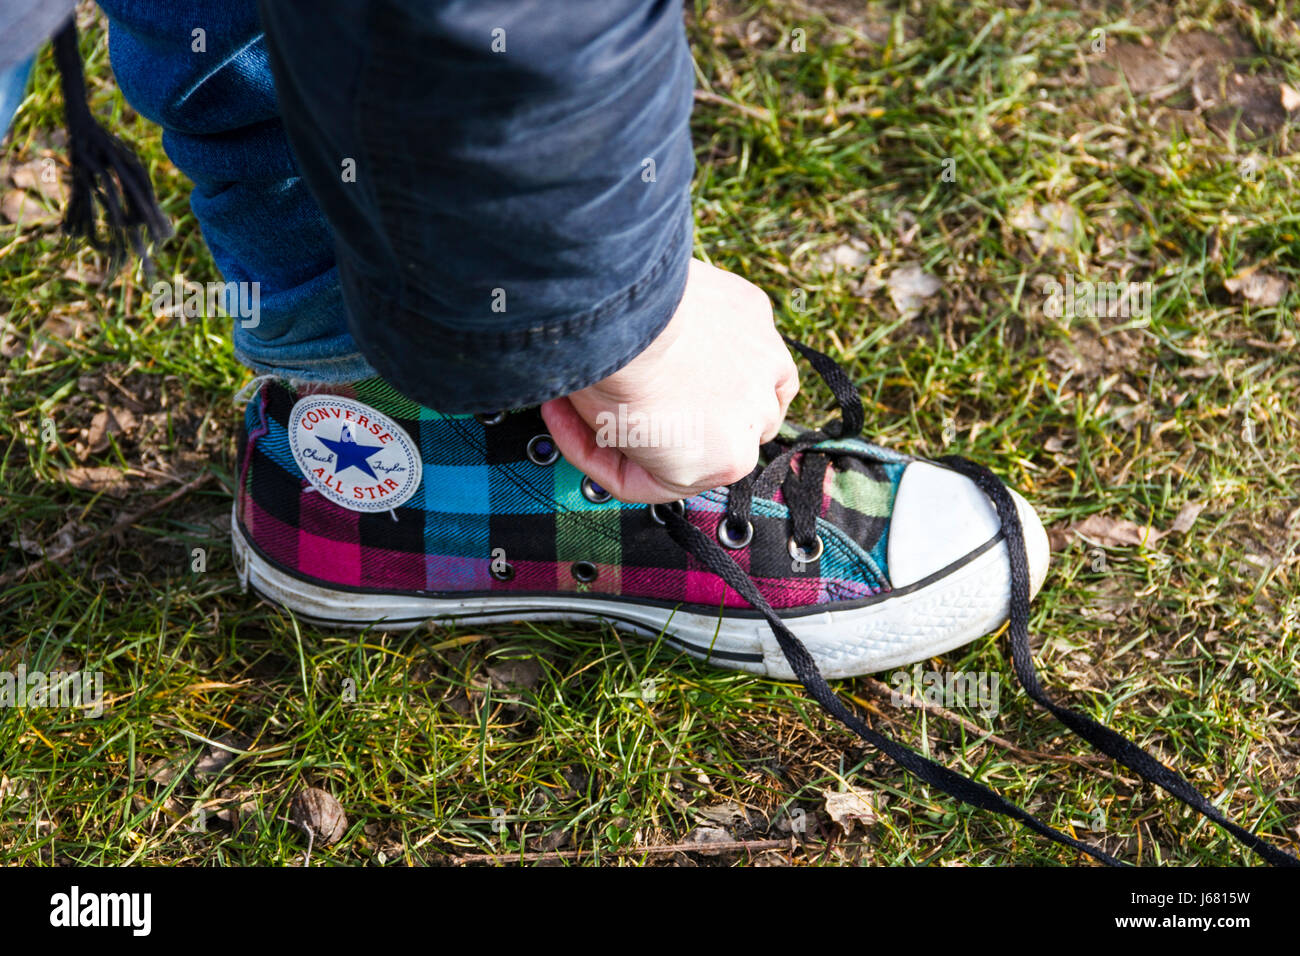 Erwachsene Person binden eine rückgängig gemachte Schuhbändern auf einem  Tartan-gemusterten Converse All Star' Schuh Stockfotografie - Alamy